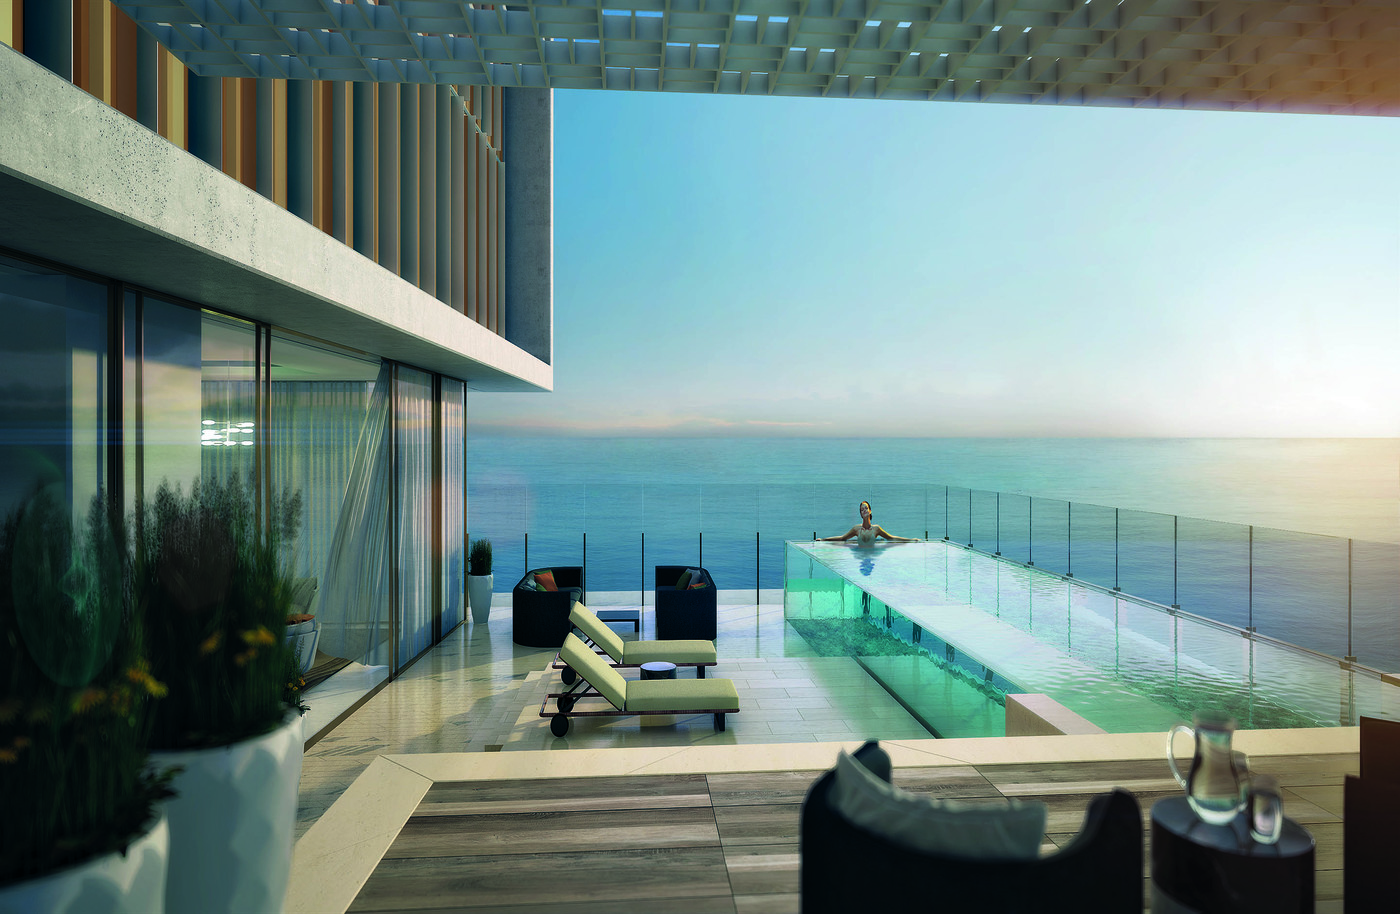 imagen 6 de The Royal Atlantis Resort & Residences, un nuevo edificio de lujo y escándalo en Dubai.